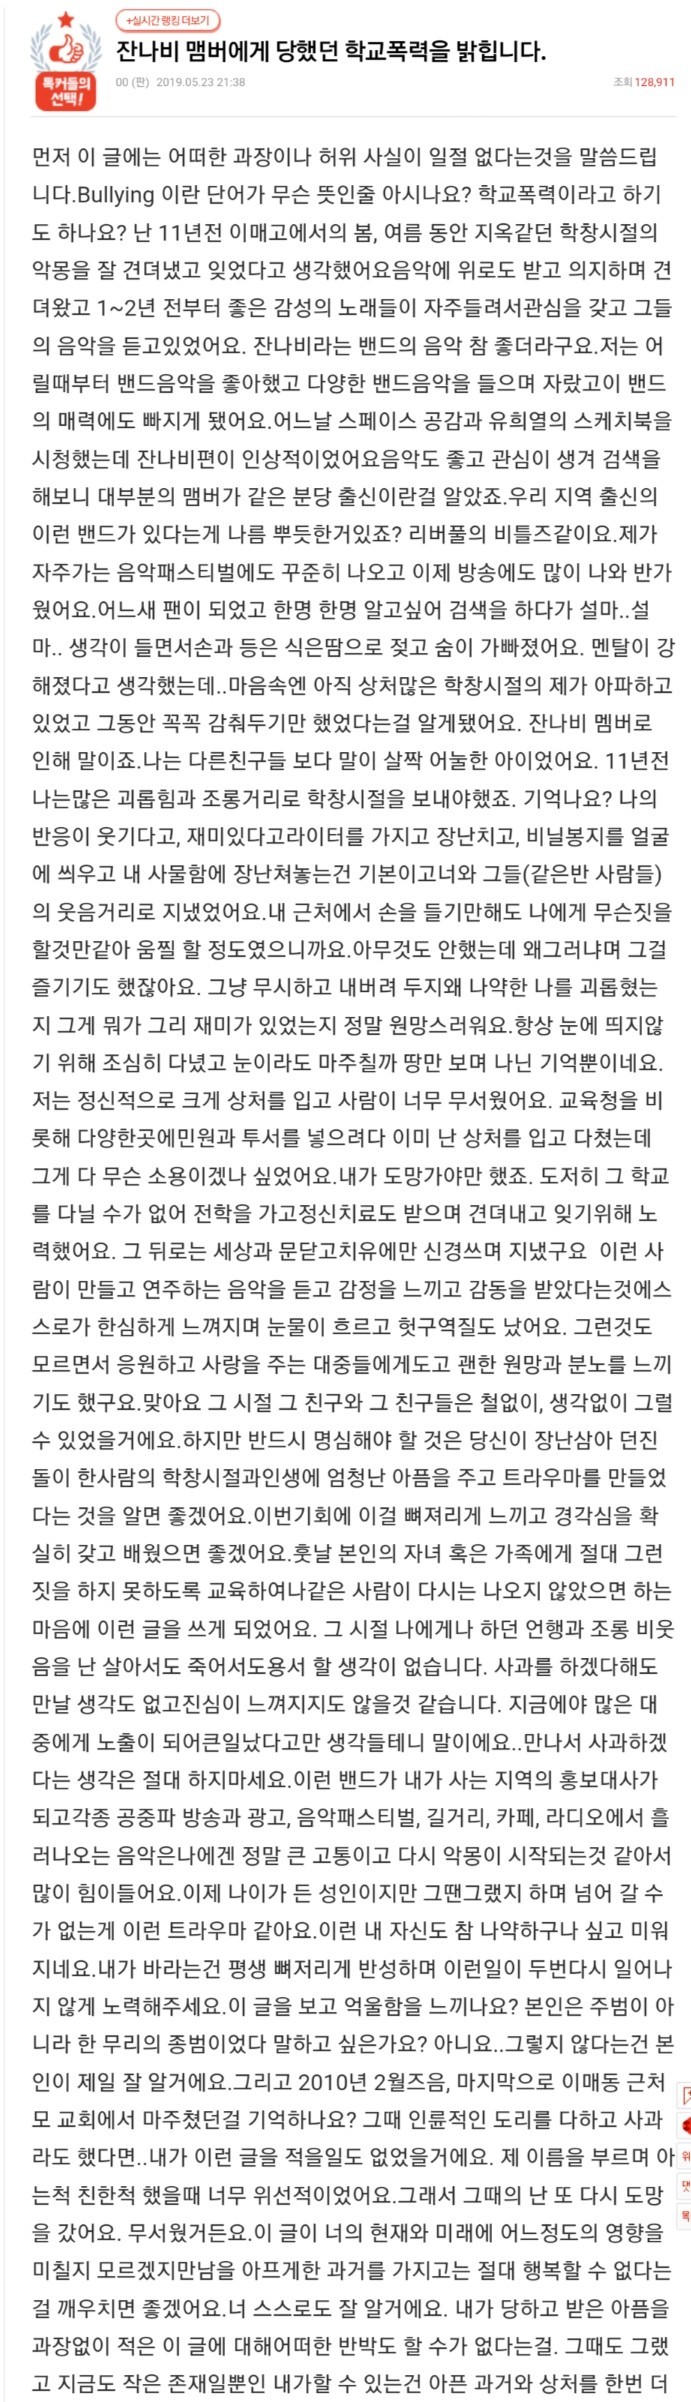 05/24 잔나비 유영현 학교폭력 논란으로 탈퇴+sbs뉴스 김학의 보도 관련